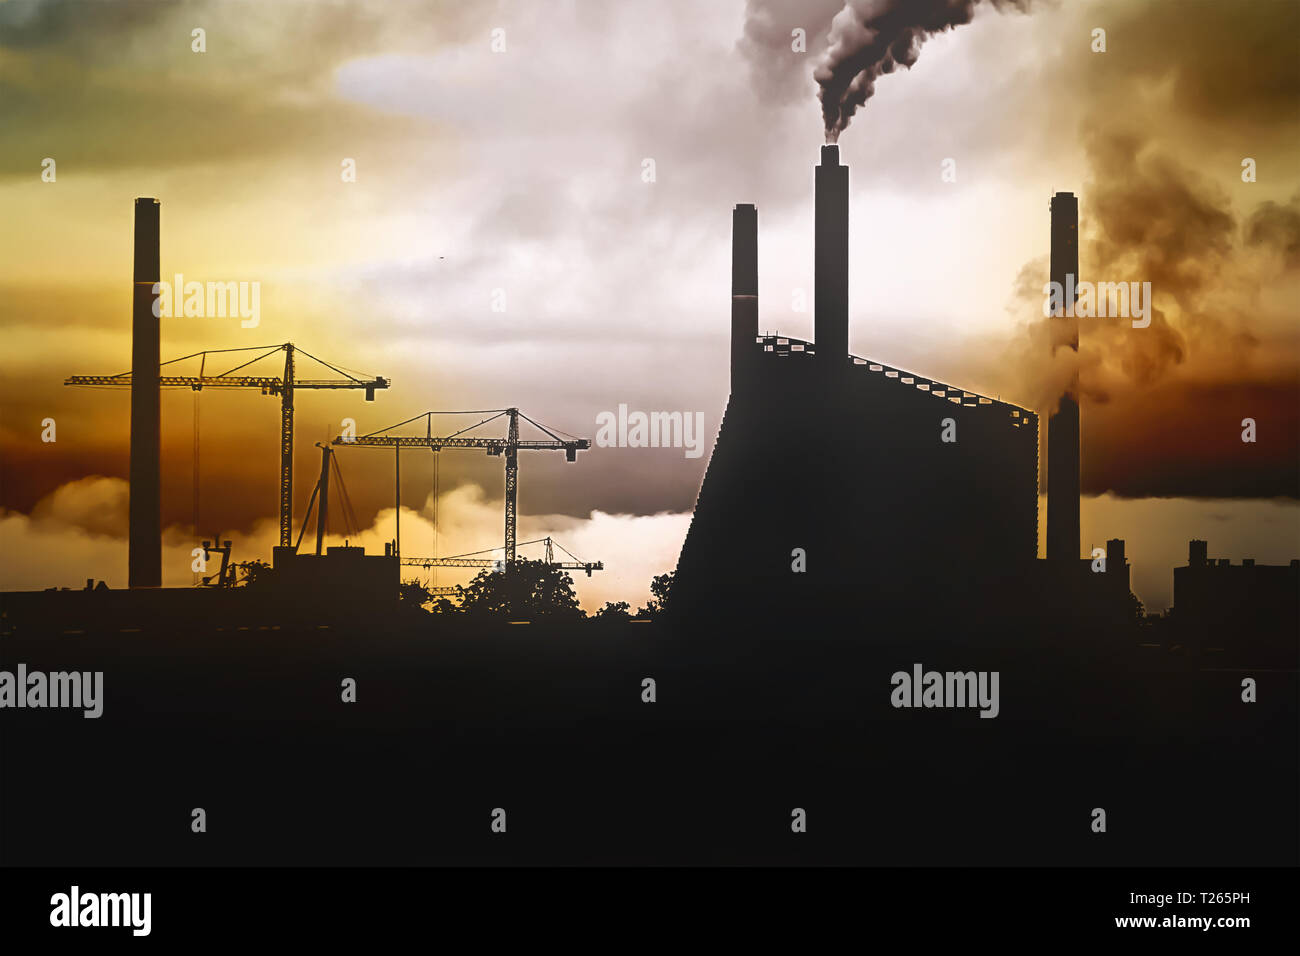 Concetto di un ambiente inquinato - un panorama della città al tramonto con la silhouette di una fabbrica e gru, e smog da camini. Foto Stock